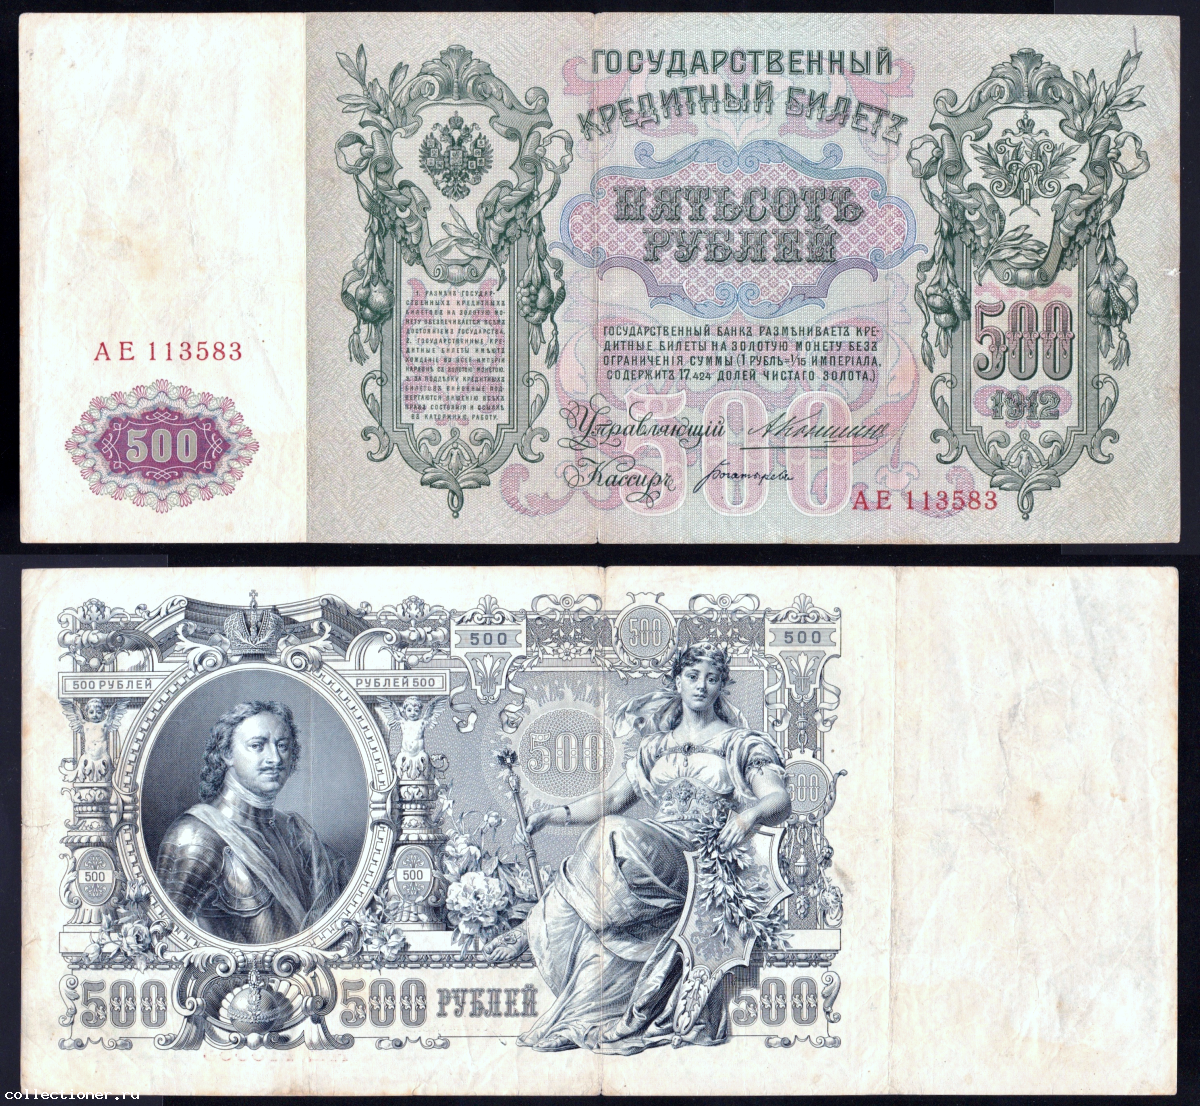 Банкнота 500 рублей Российской империи